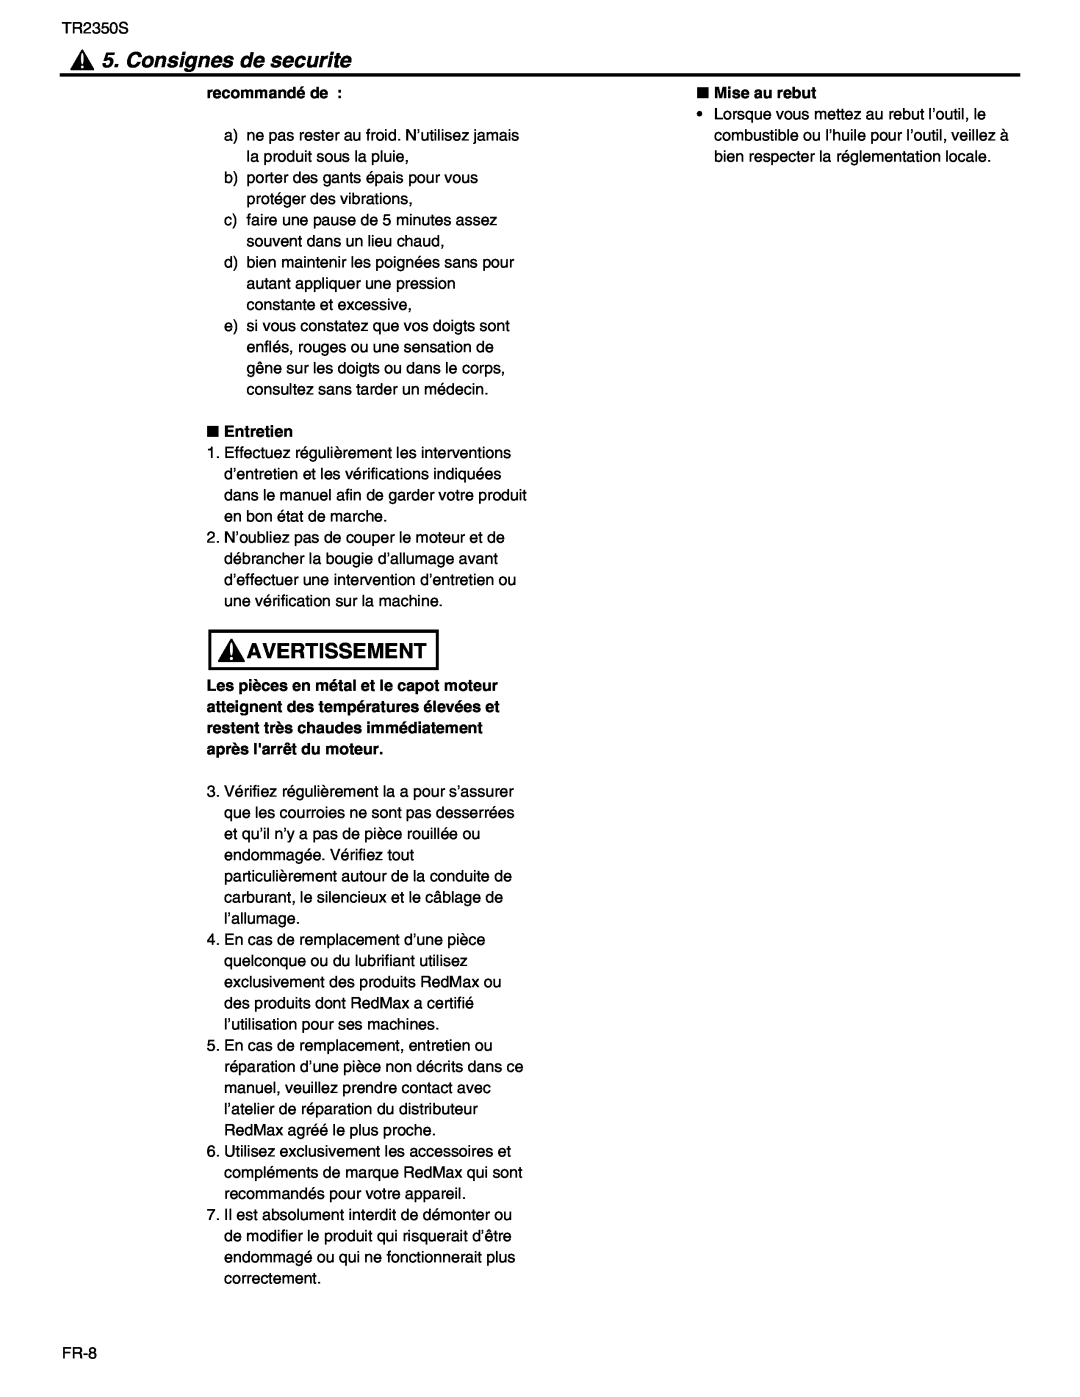 RedMax TR2350S manual Consignes de securite, Avertissement, recommandé de, Mise au rebut, Entretien 